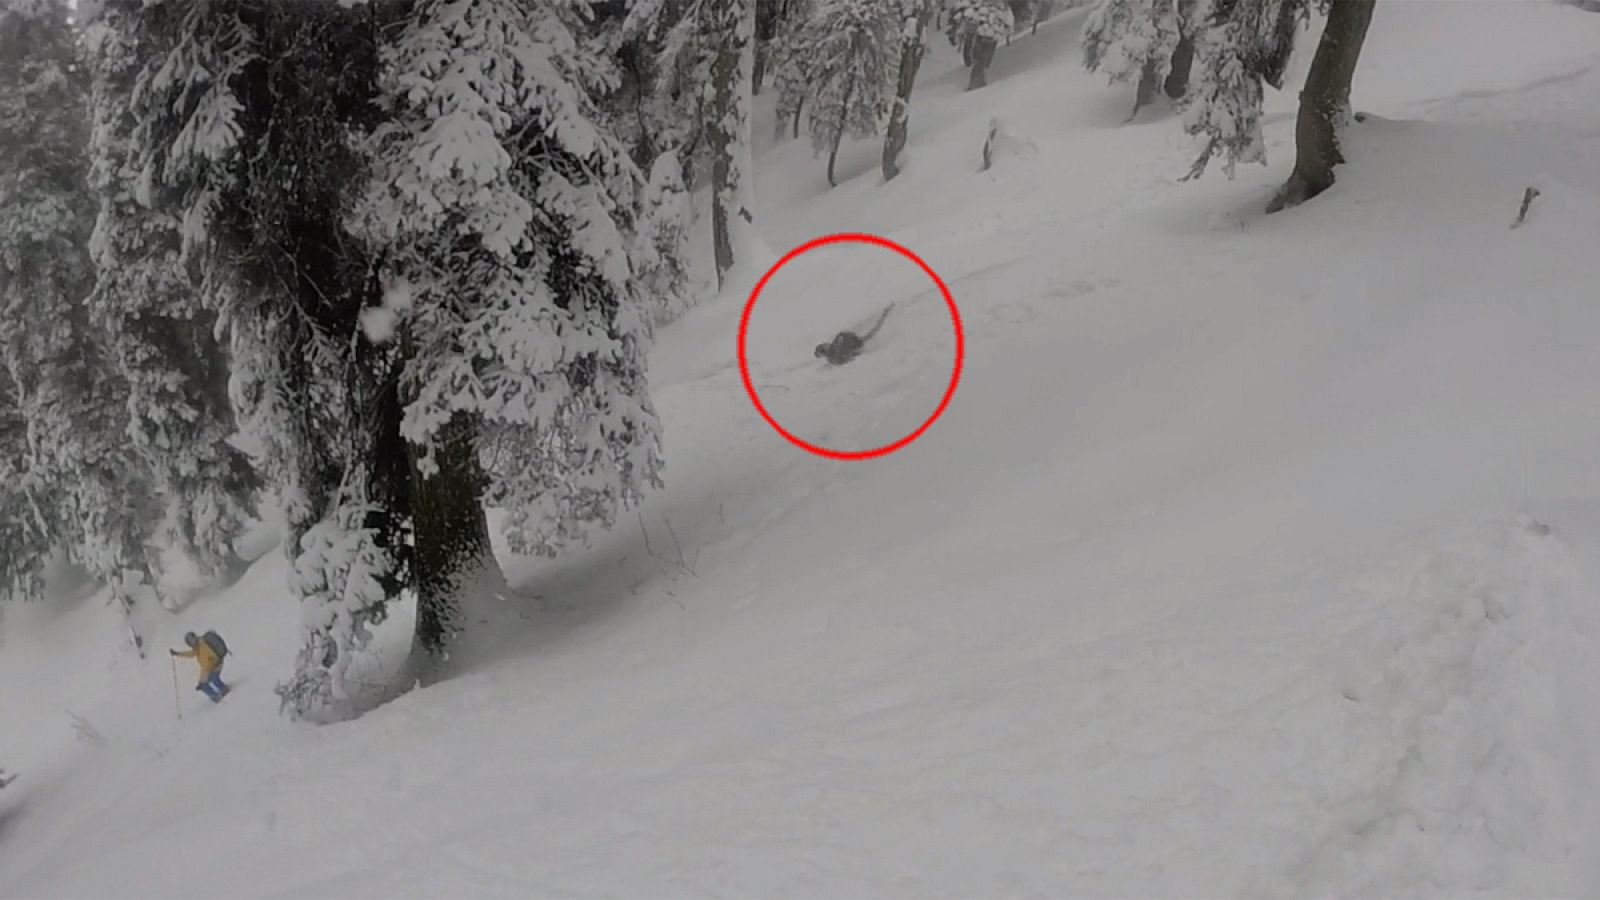 Fotograma del vídeo tomado por los esquiadores en el que se aprecia al felino.